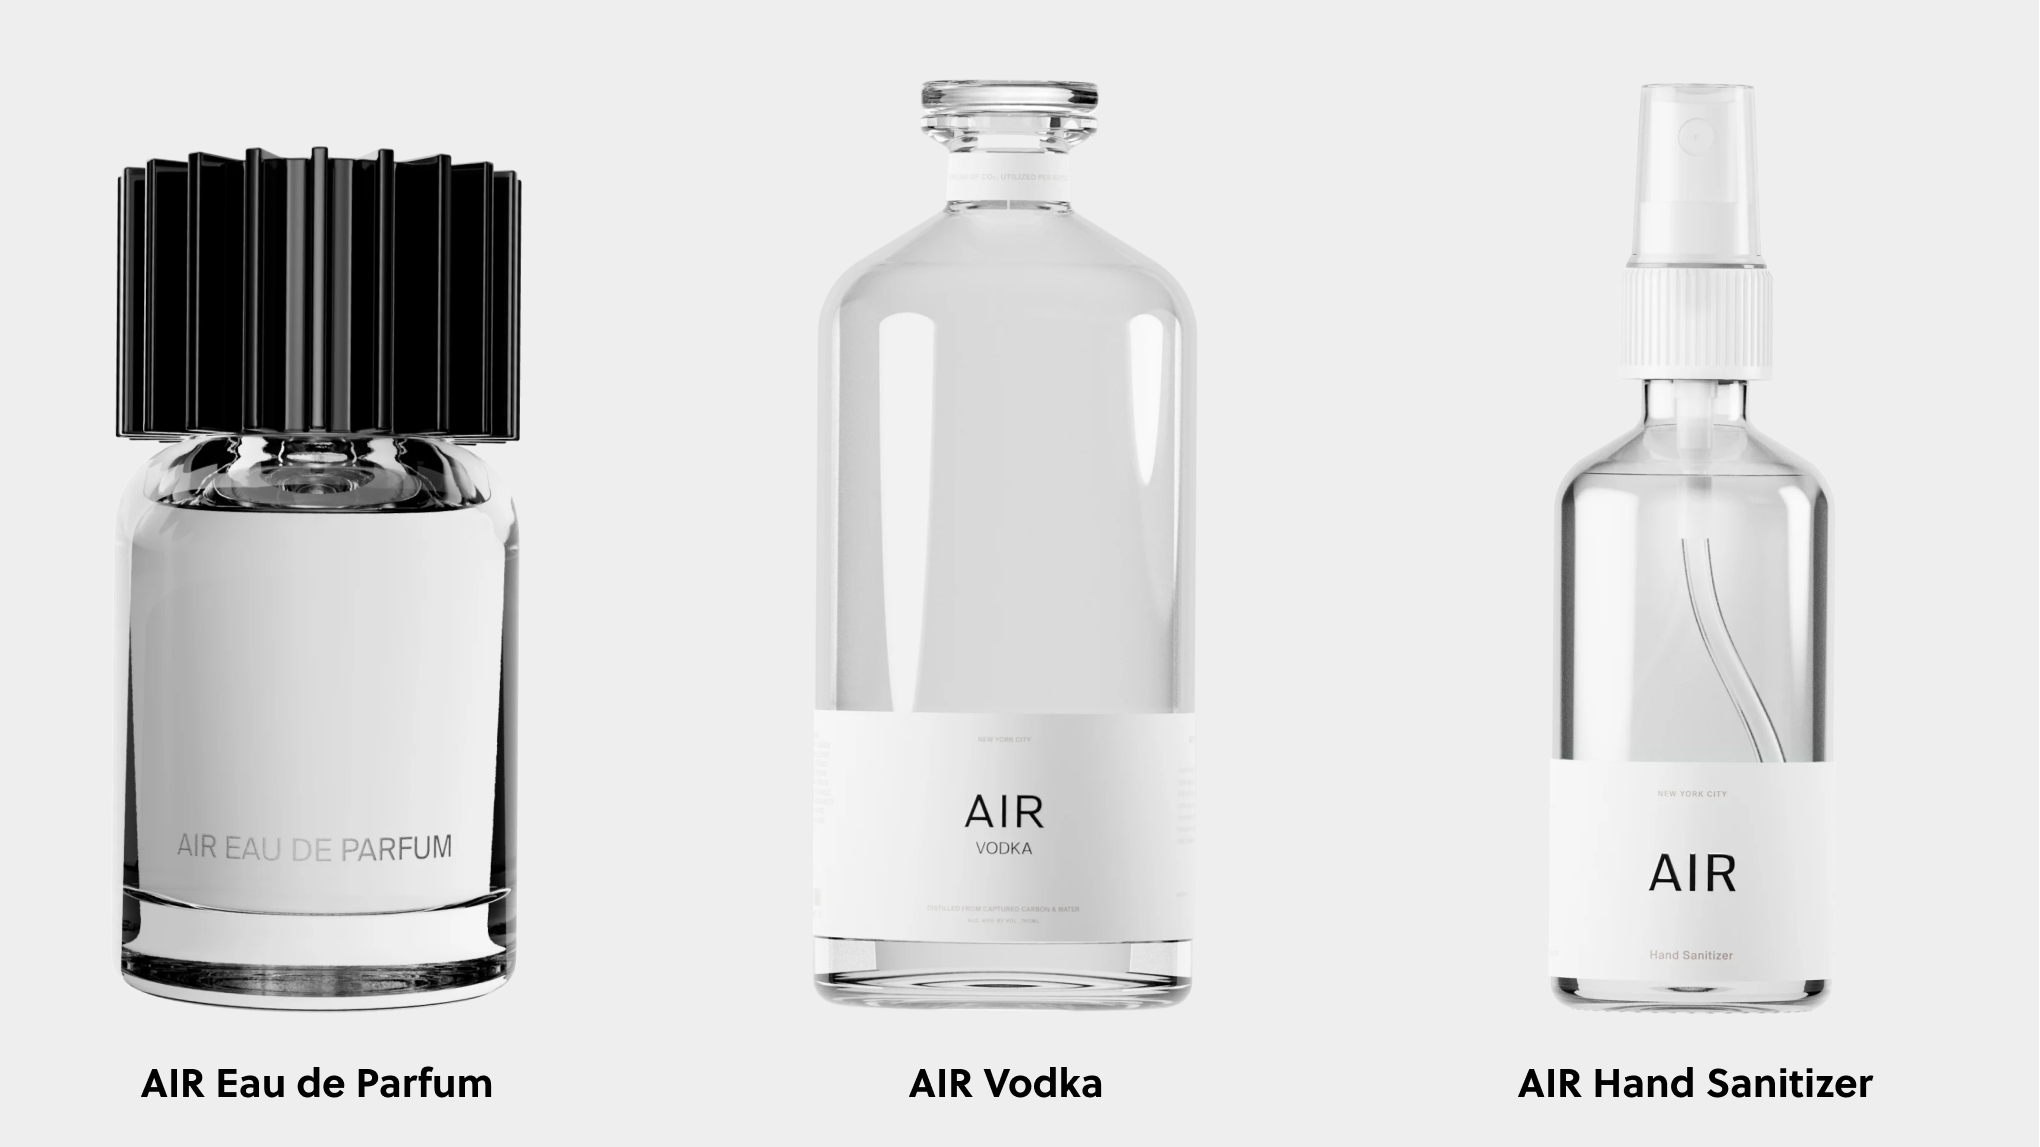 Air company vodka, eau de parfum and hand sanitizer